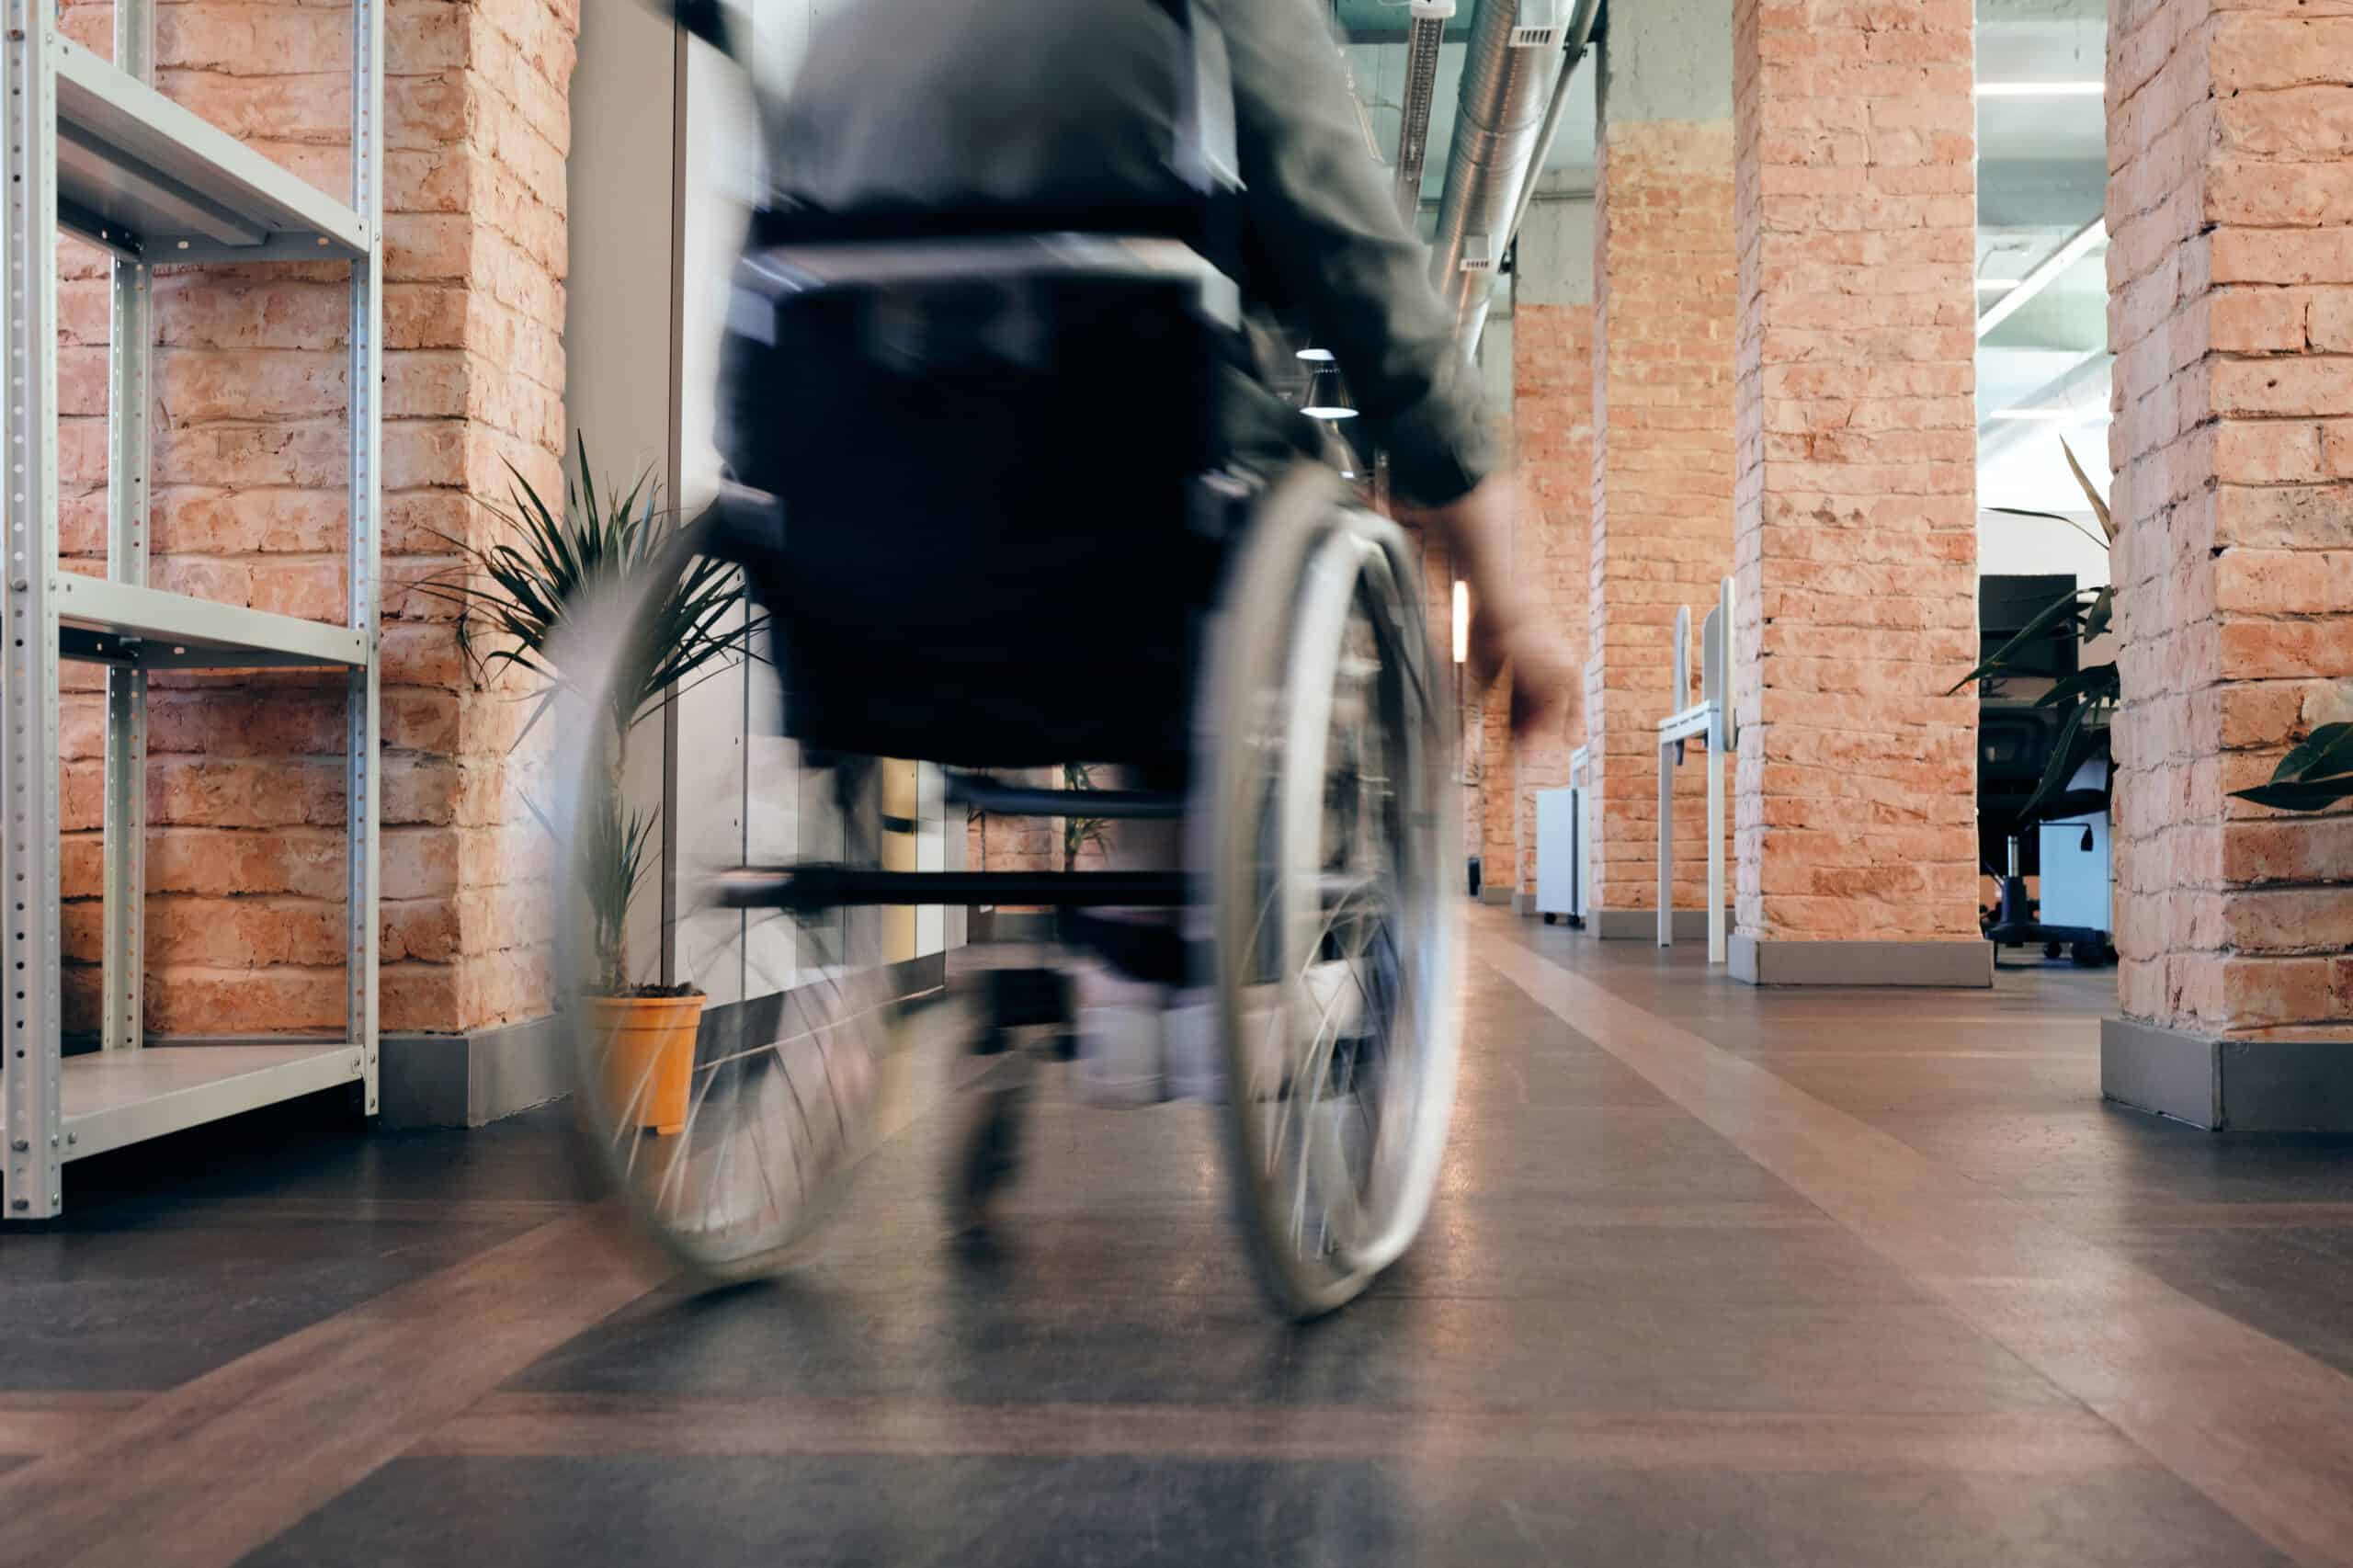 Rollstuhlfahrer fährt einen Korridor entlang